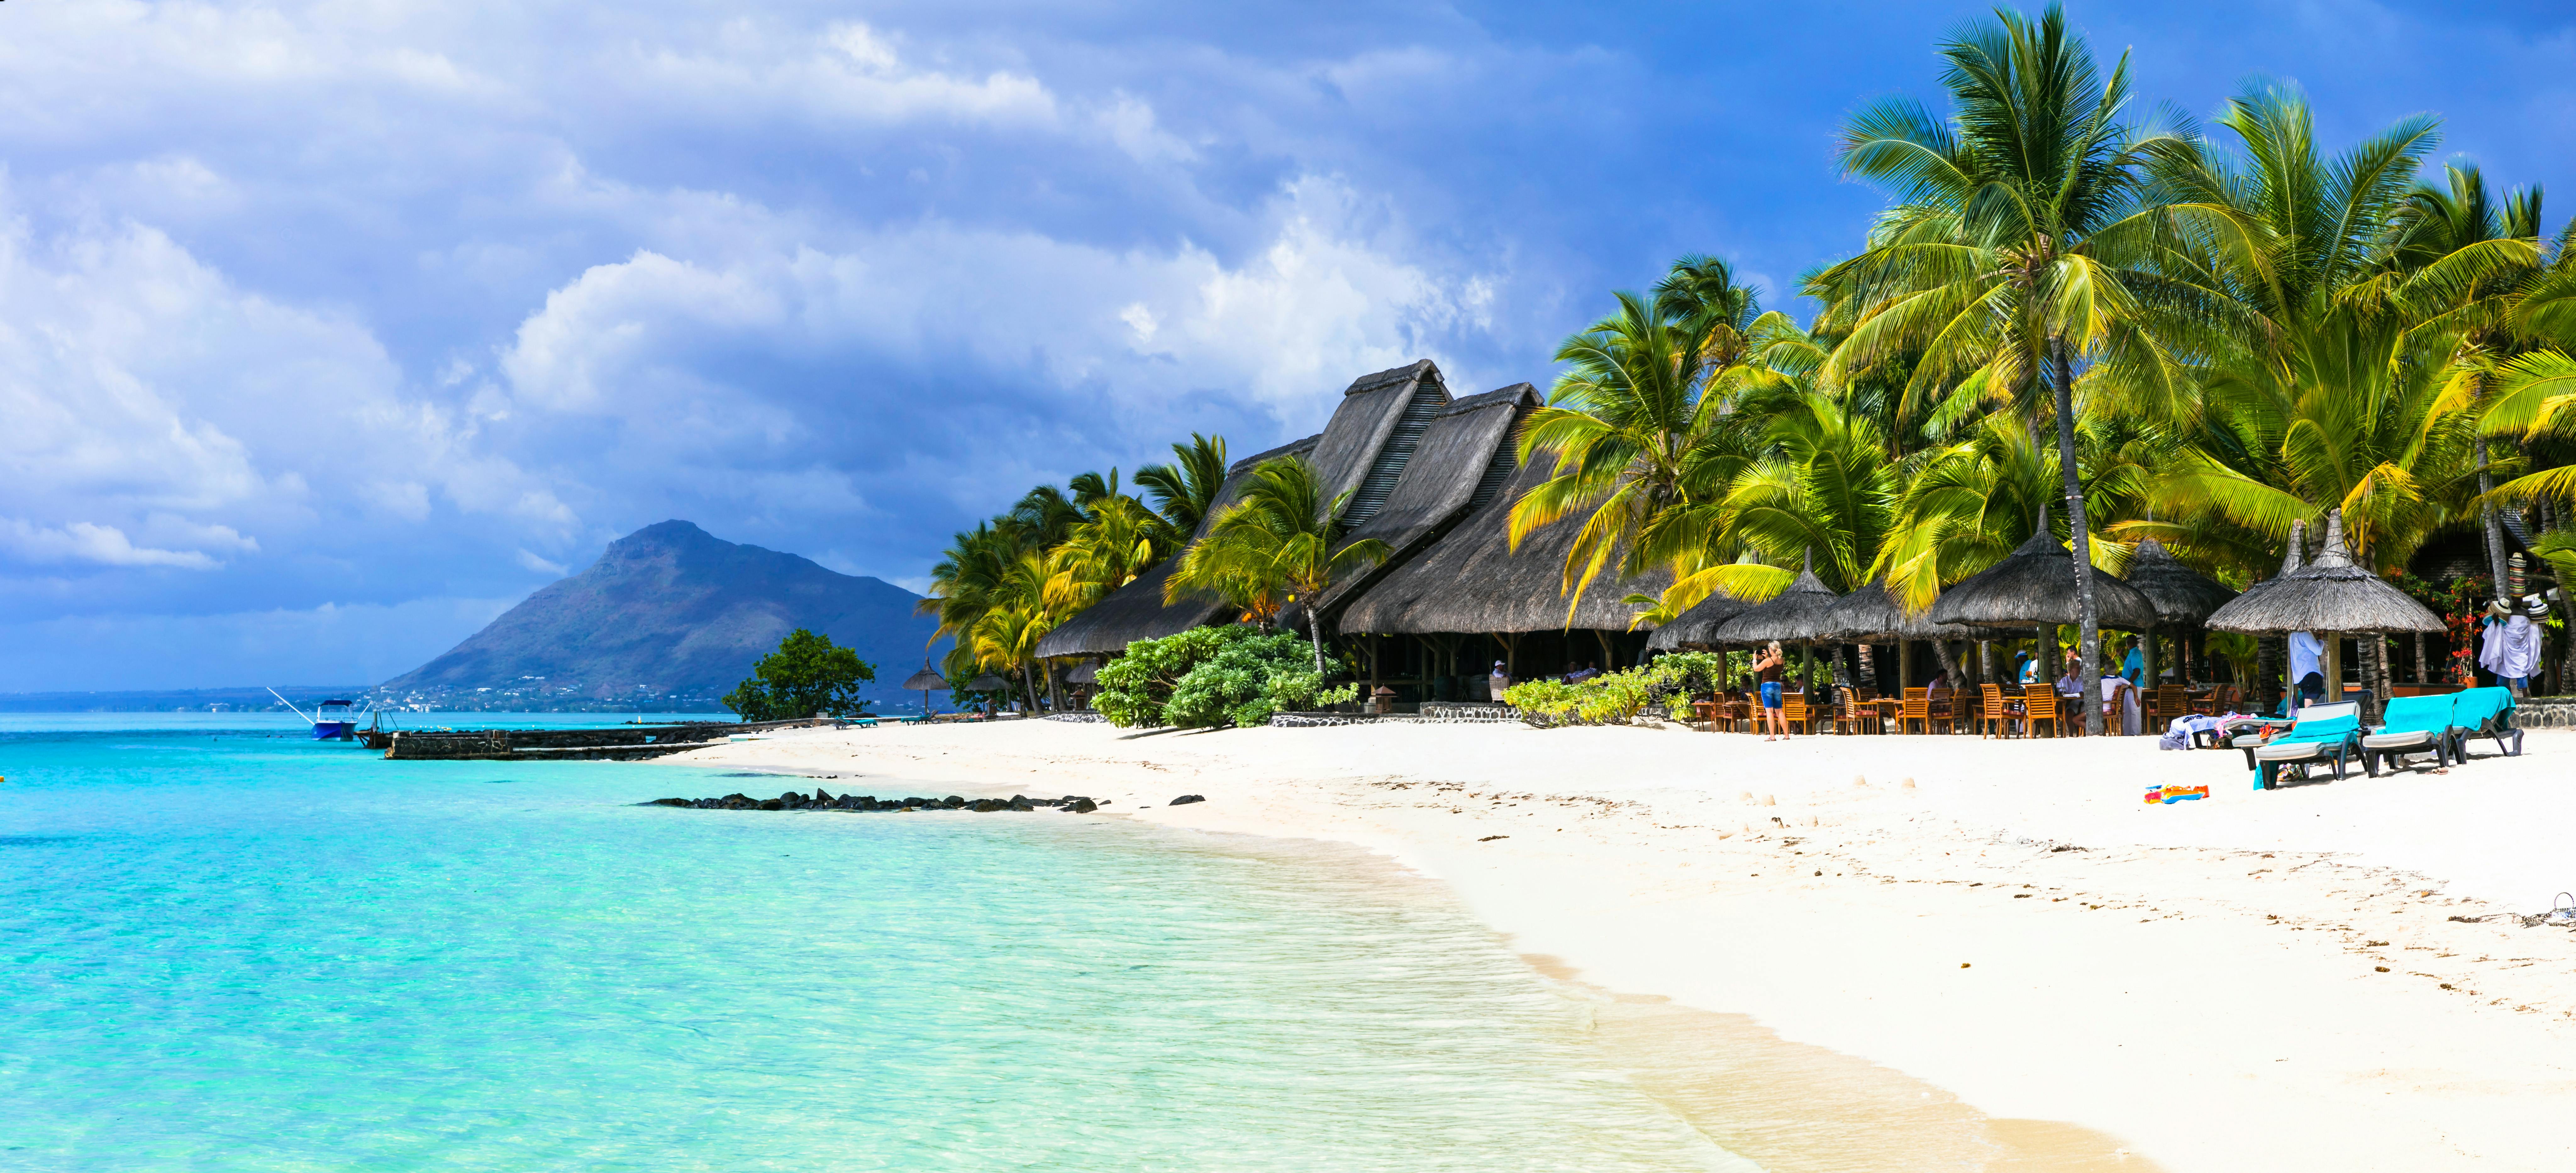 mauritius tourism form